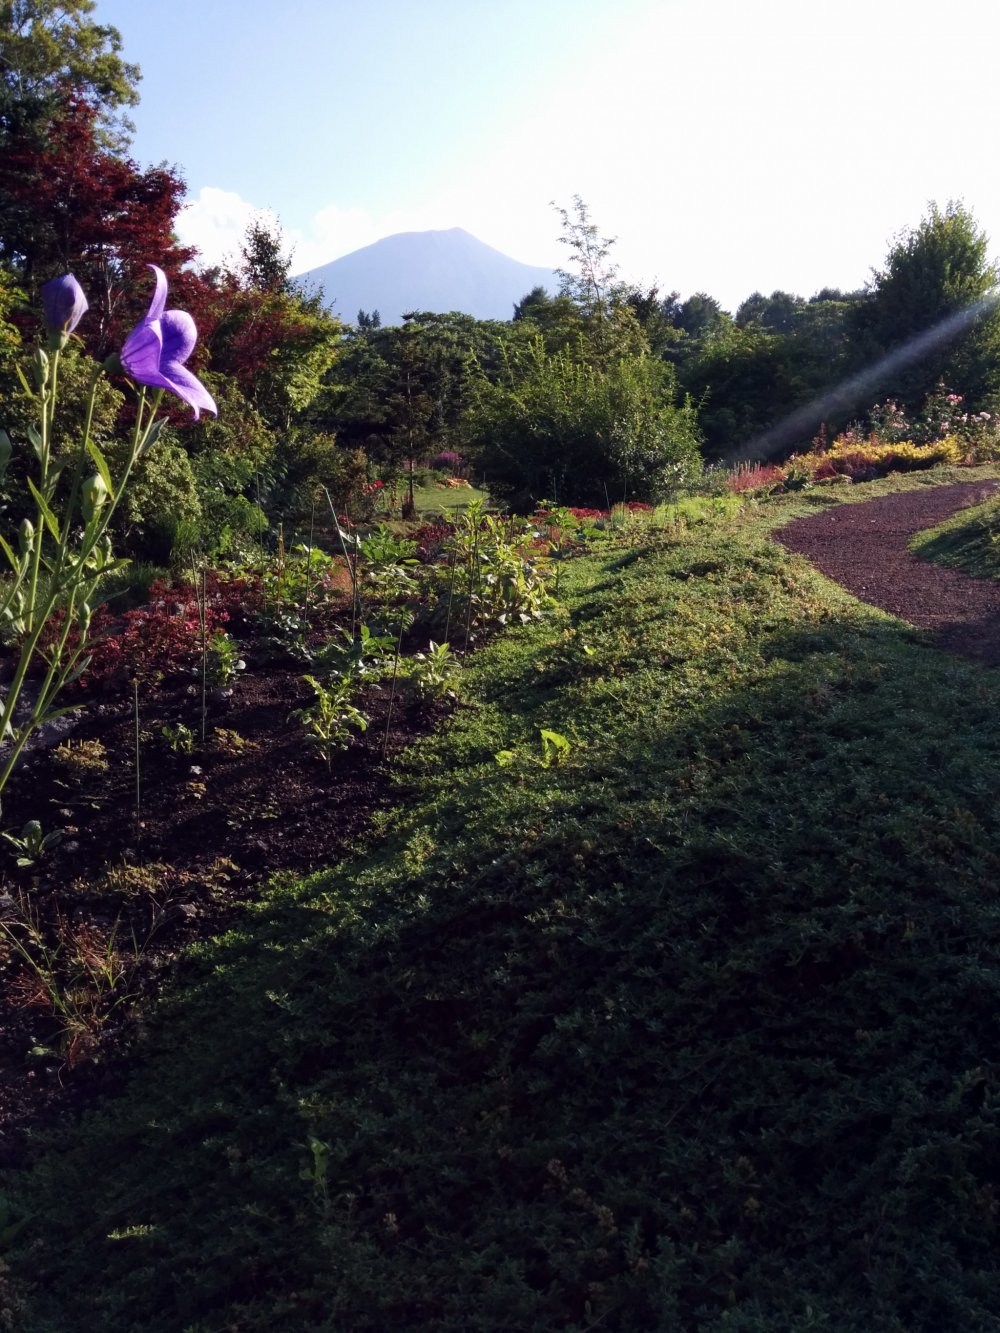 Mặt trời buổi chiều bắt đầu lặn. Núi Iwate đứng hiên ngang trong tầm nhìn